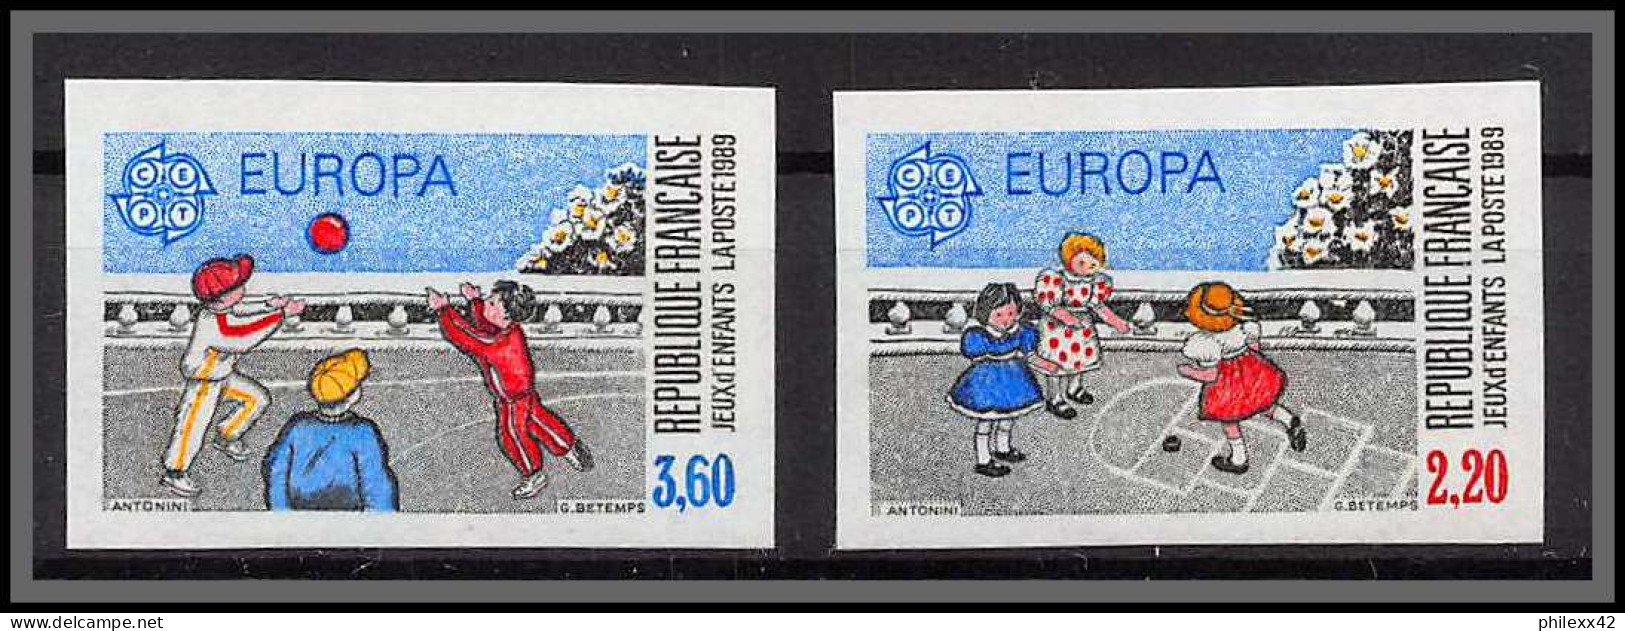 France N°2584/2585 Europa 1989 Jeux D'enfants La Marelle Balle Child Games Non Dentelé ** MNH Imperf Cote 80 - 1981-1990